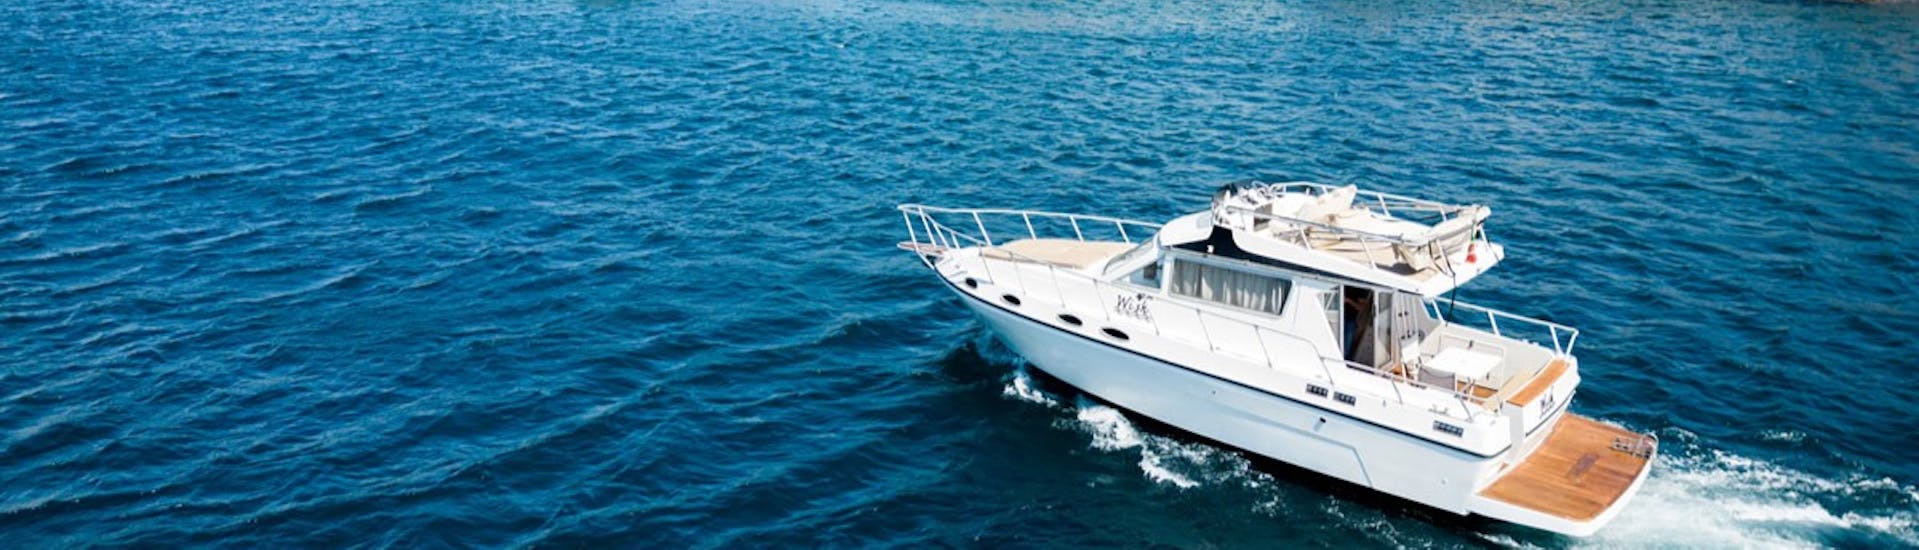 Das Wish Boot während der Private Bootstour von Catania nach Taormina und zur Isola Bella mit Apéritif mit Wish Boat Rent.